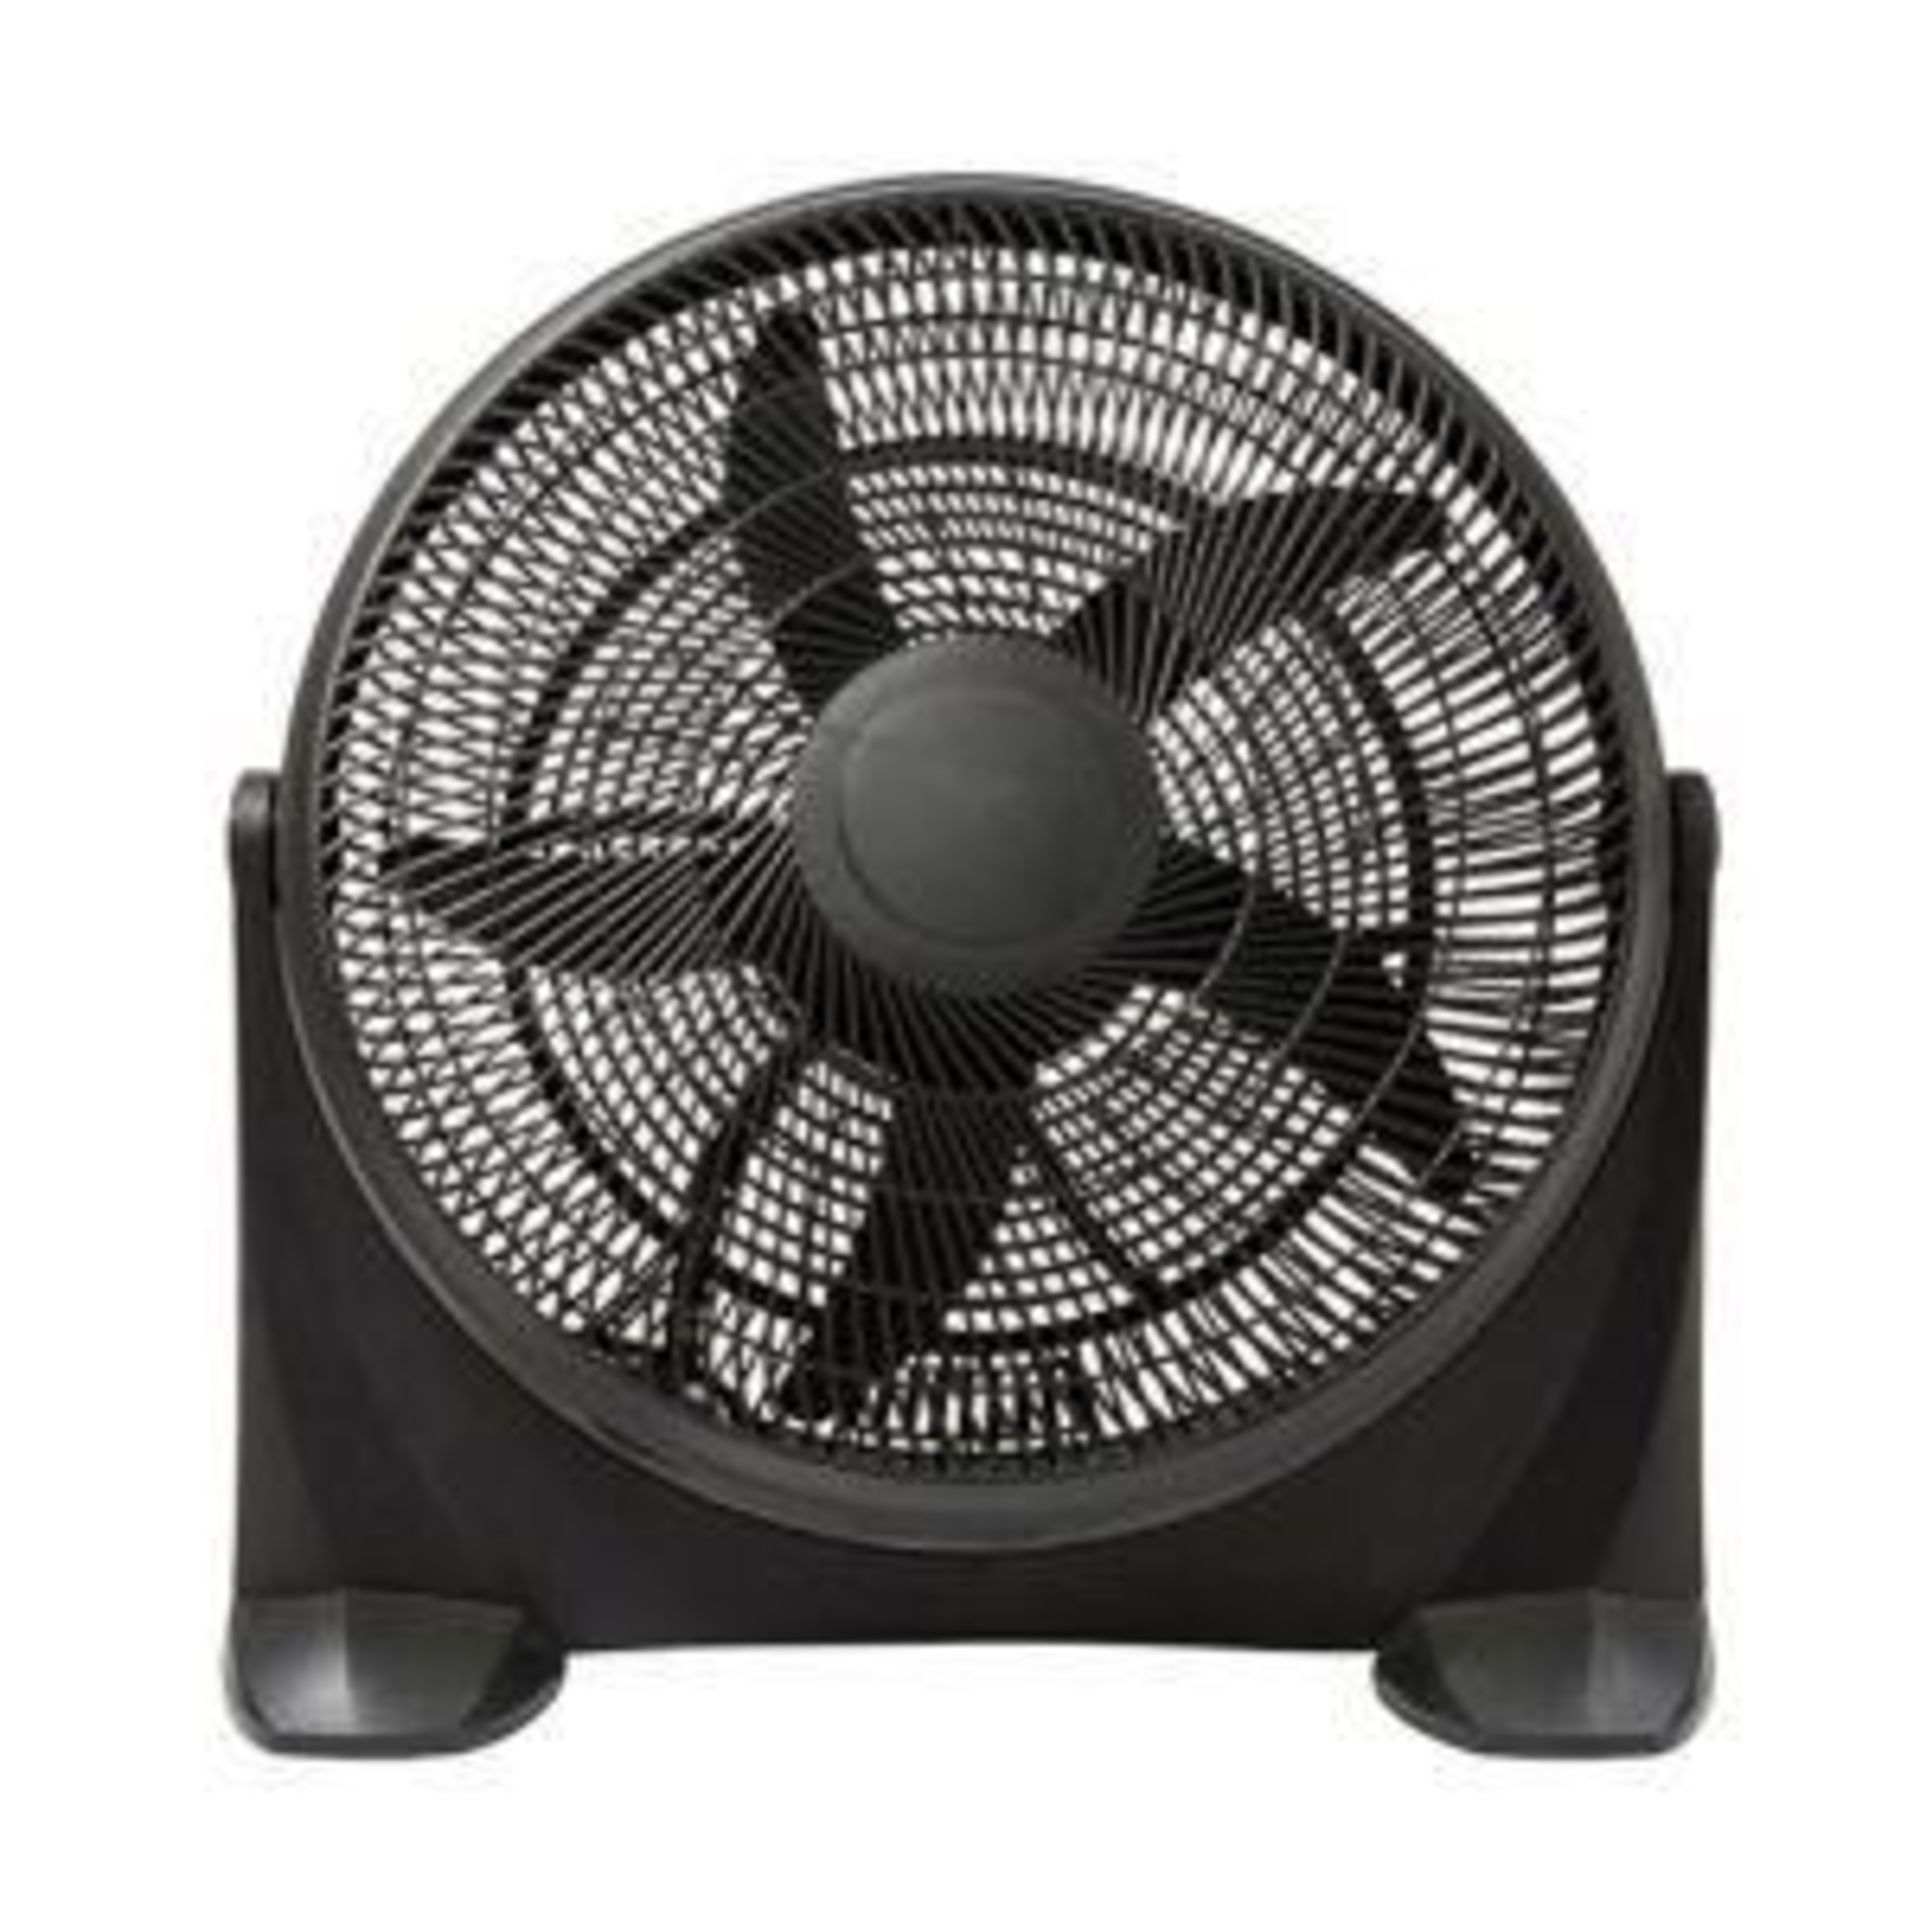 Black 20" 90W Floor Fan - SR4. Black 20" 90W Floor fan. This floor fan will provide powerful cooling